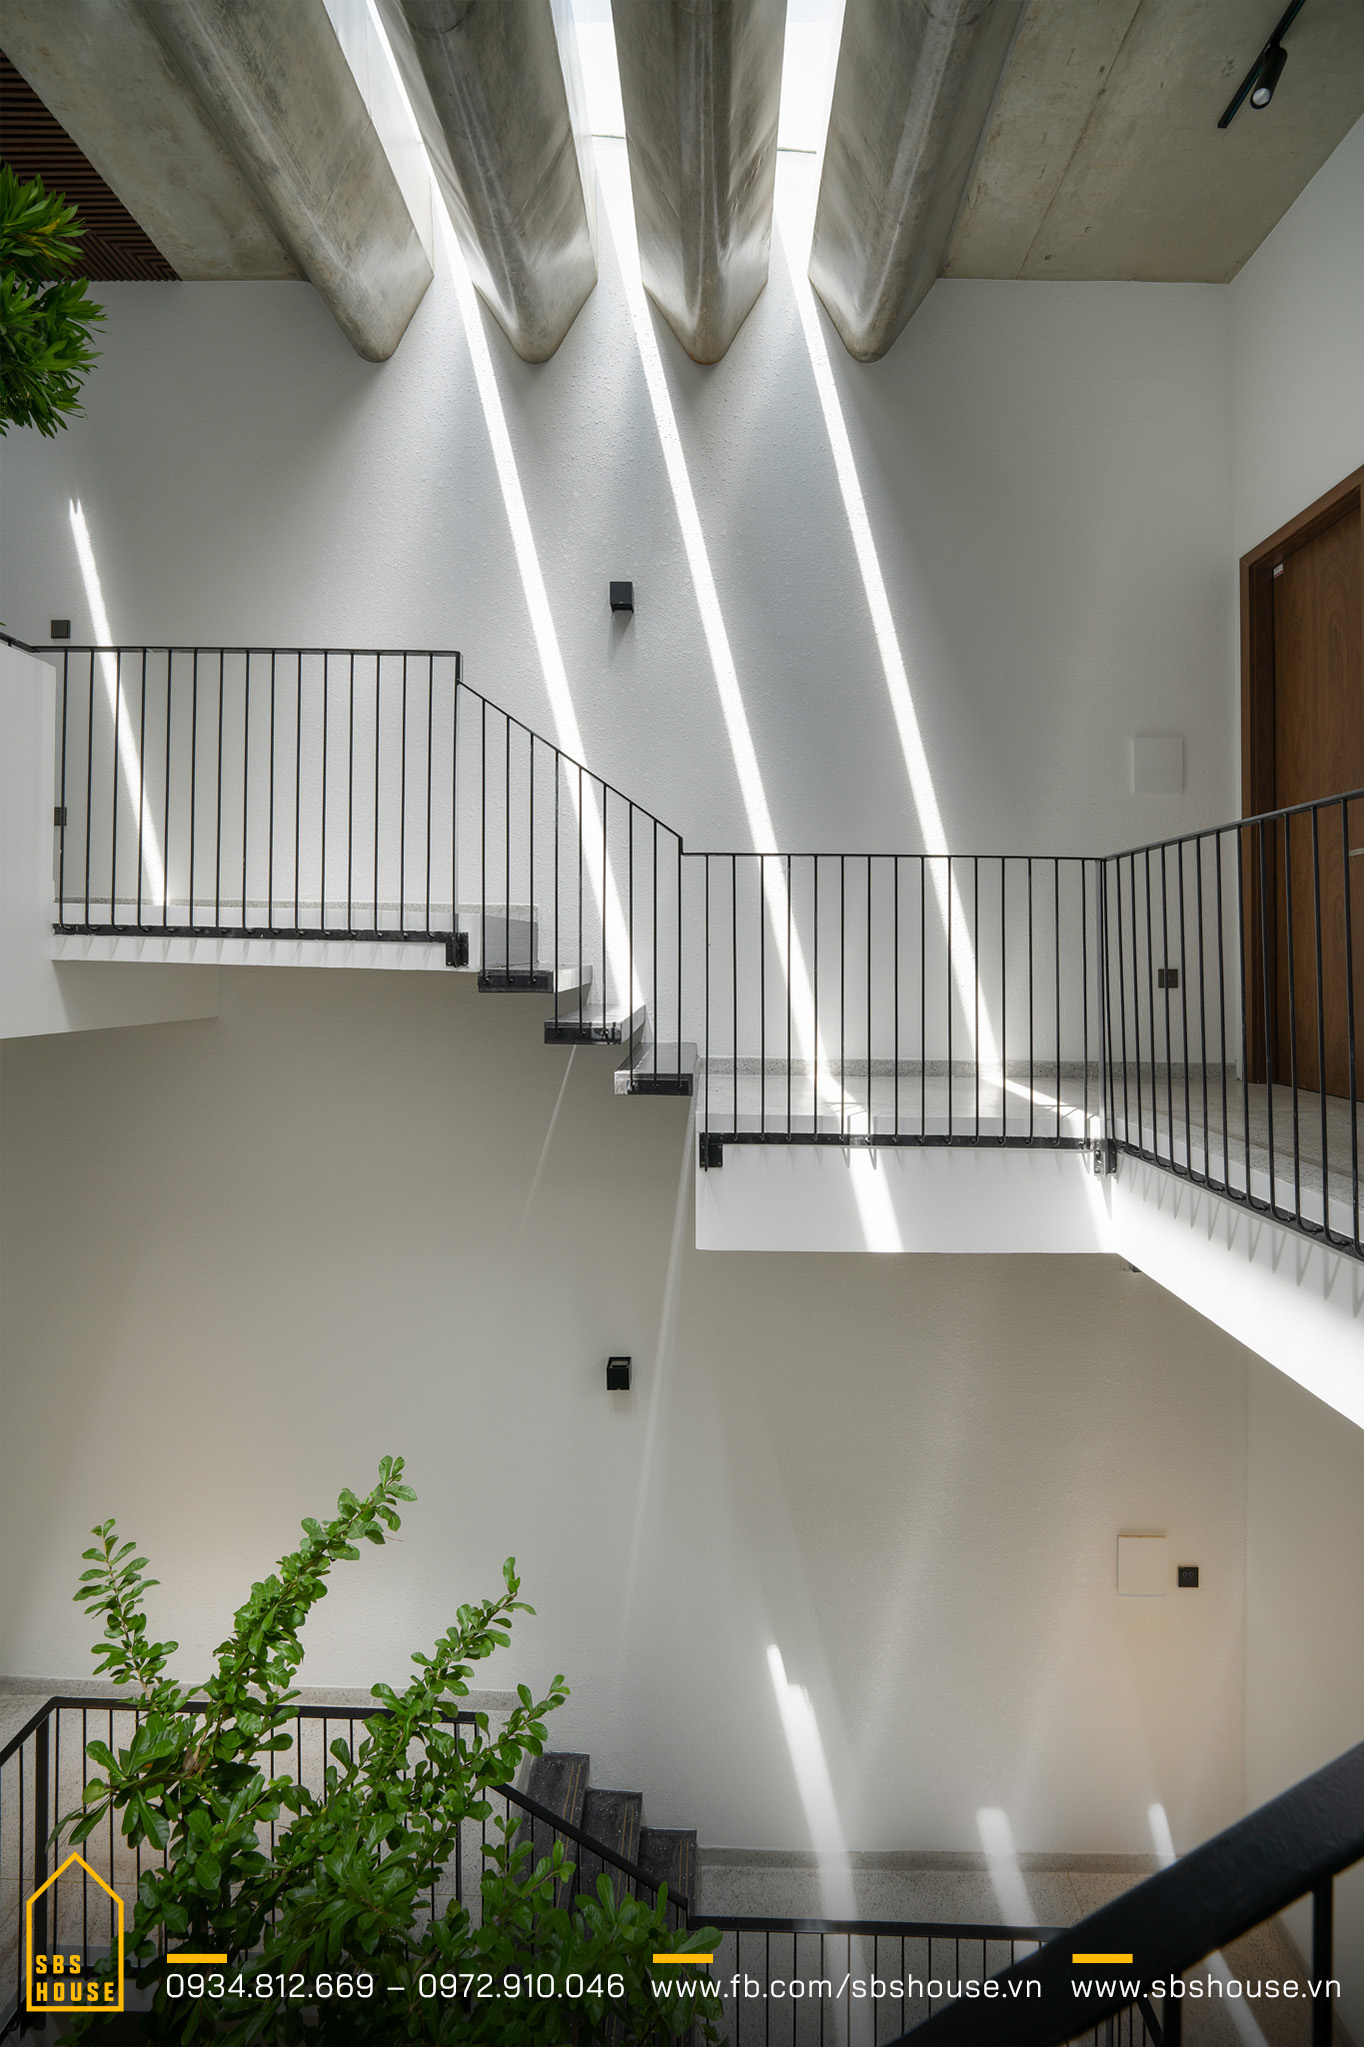 Hệ lam bê tông giúp ánh sáng xuyên vào nhà thành vệt trông khá nghệ thuật